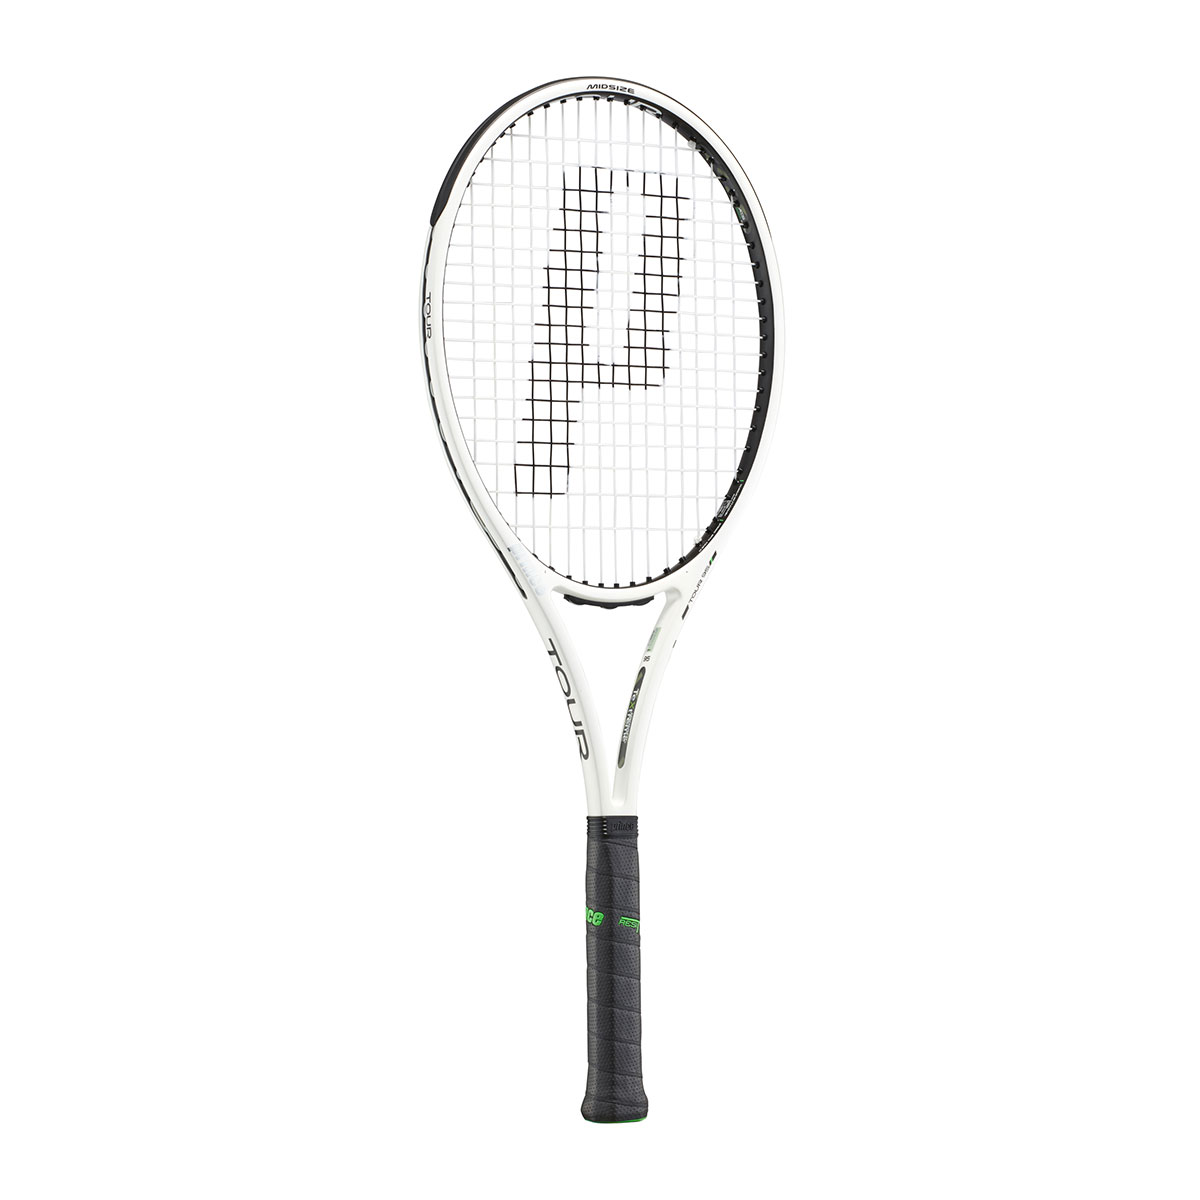 15410円 全品最安値に挑戦 Prince プリンス 硬式テニス ラケット 7TJ123 TOUR 95 ツアー95 310g ホワイトＸブラック グリップサイズ2